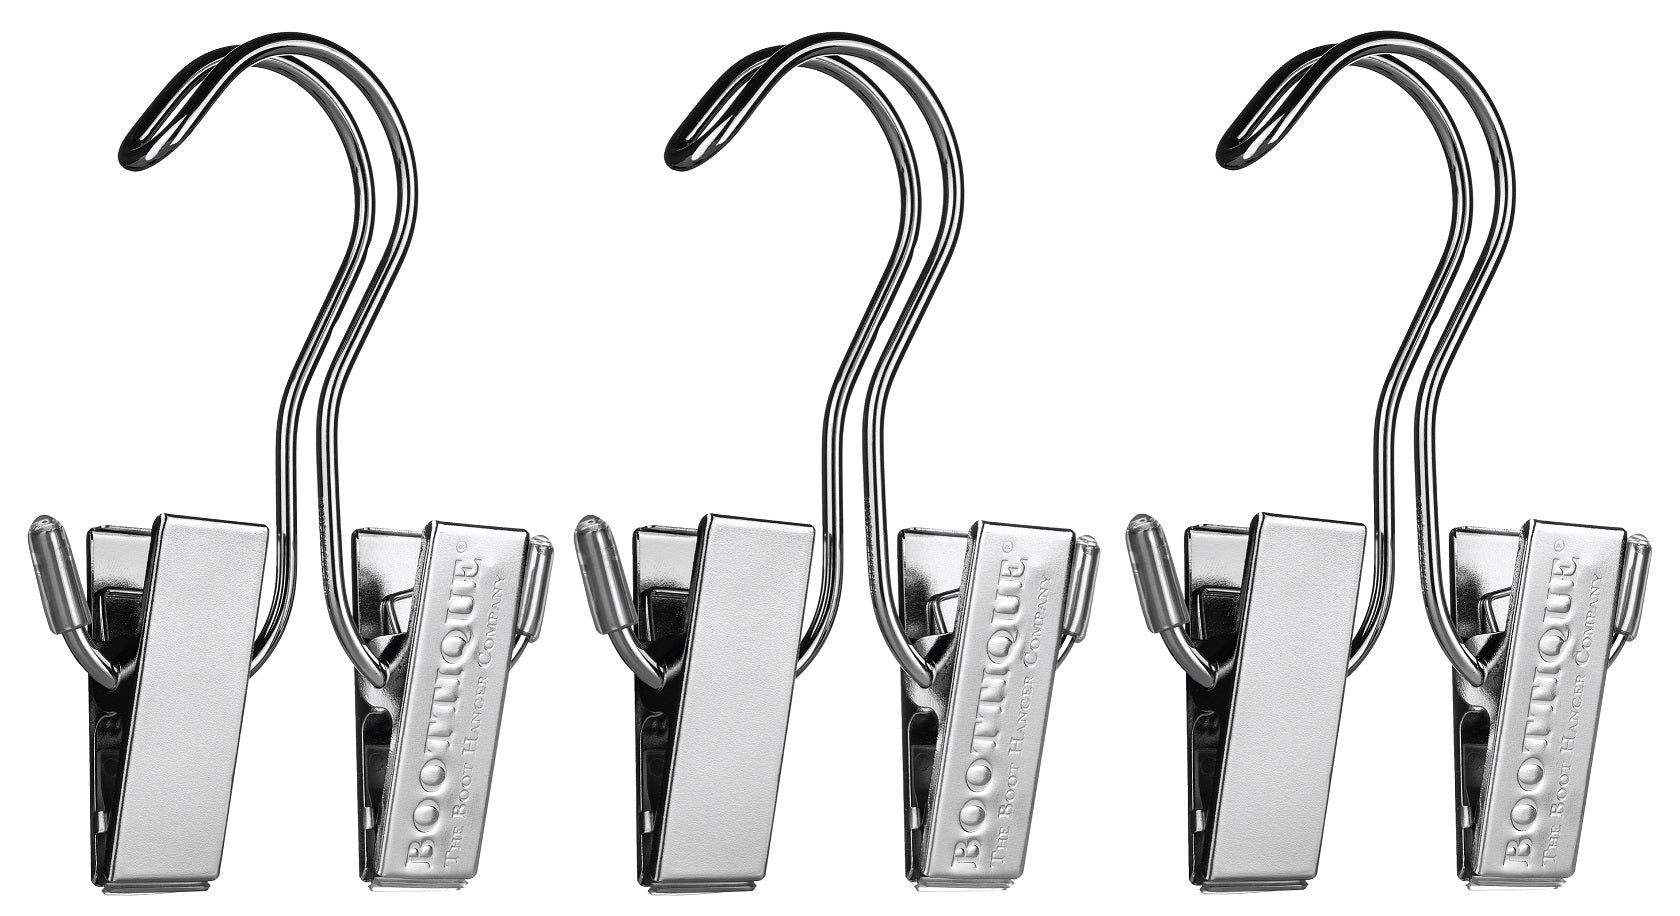 Boot Hanger Extender Rods™ (3 Rods + 3 Boot Hangers) - Boottique